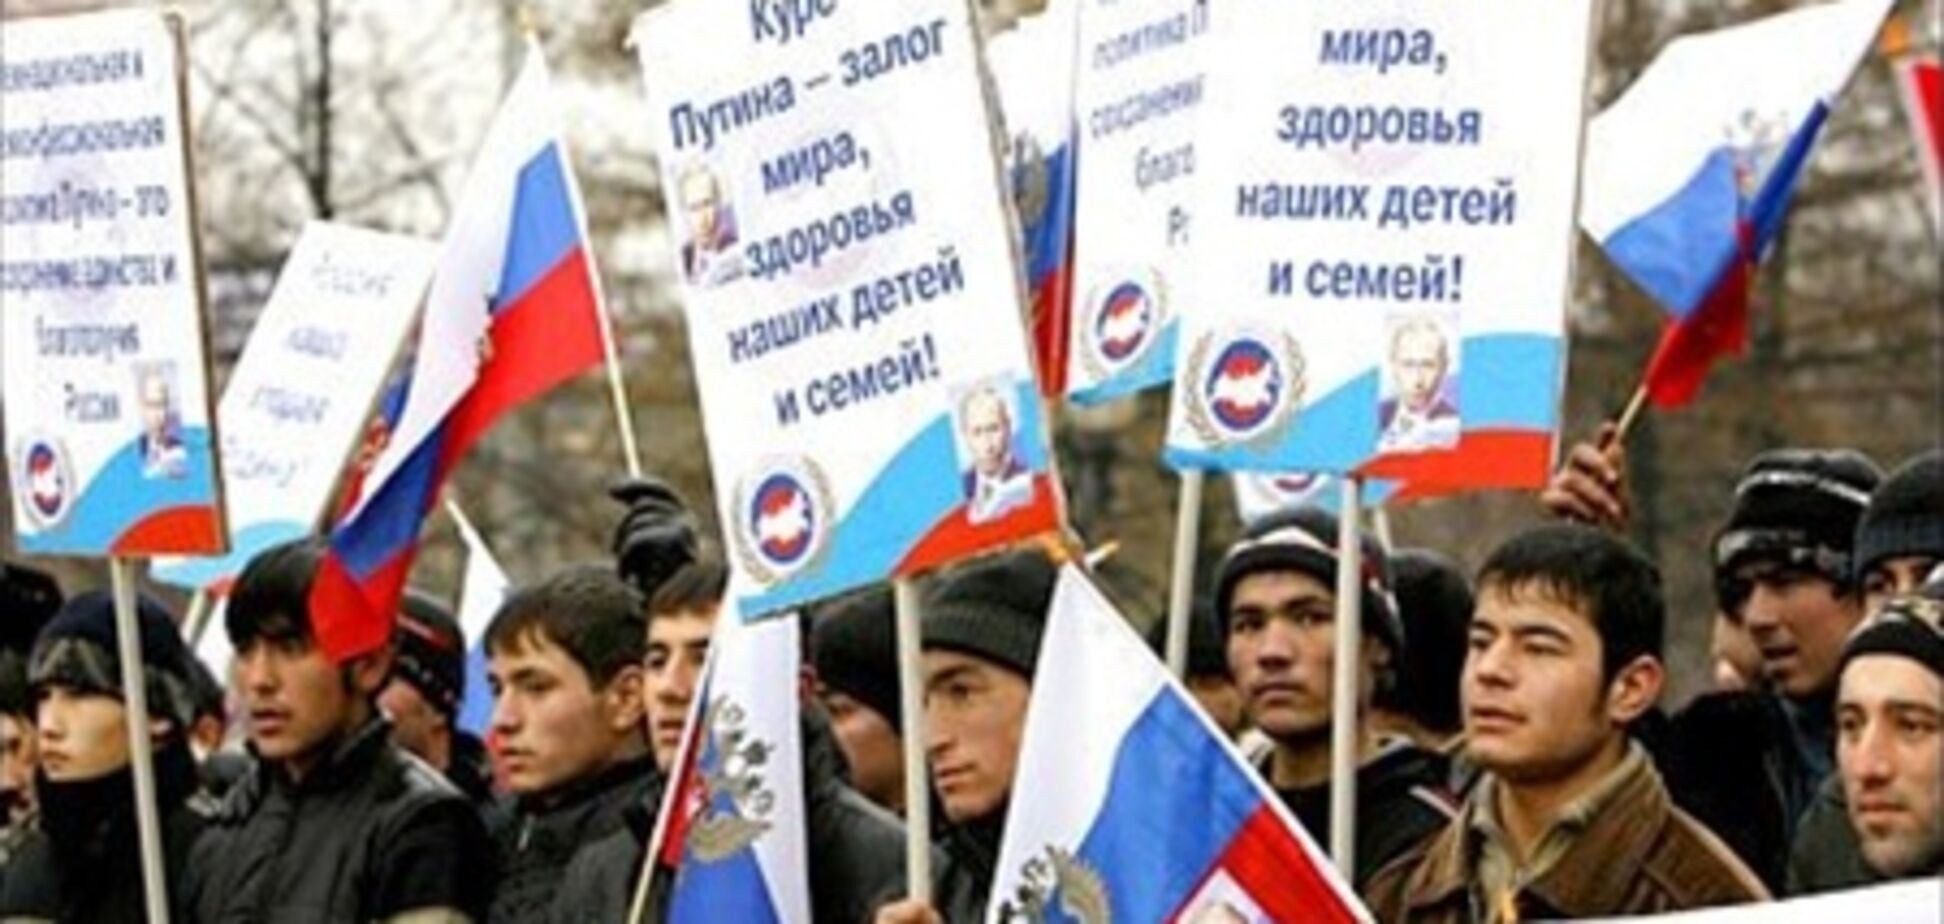 В Москве пройдет митинг сторонников власти 'Слава России!'